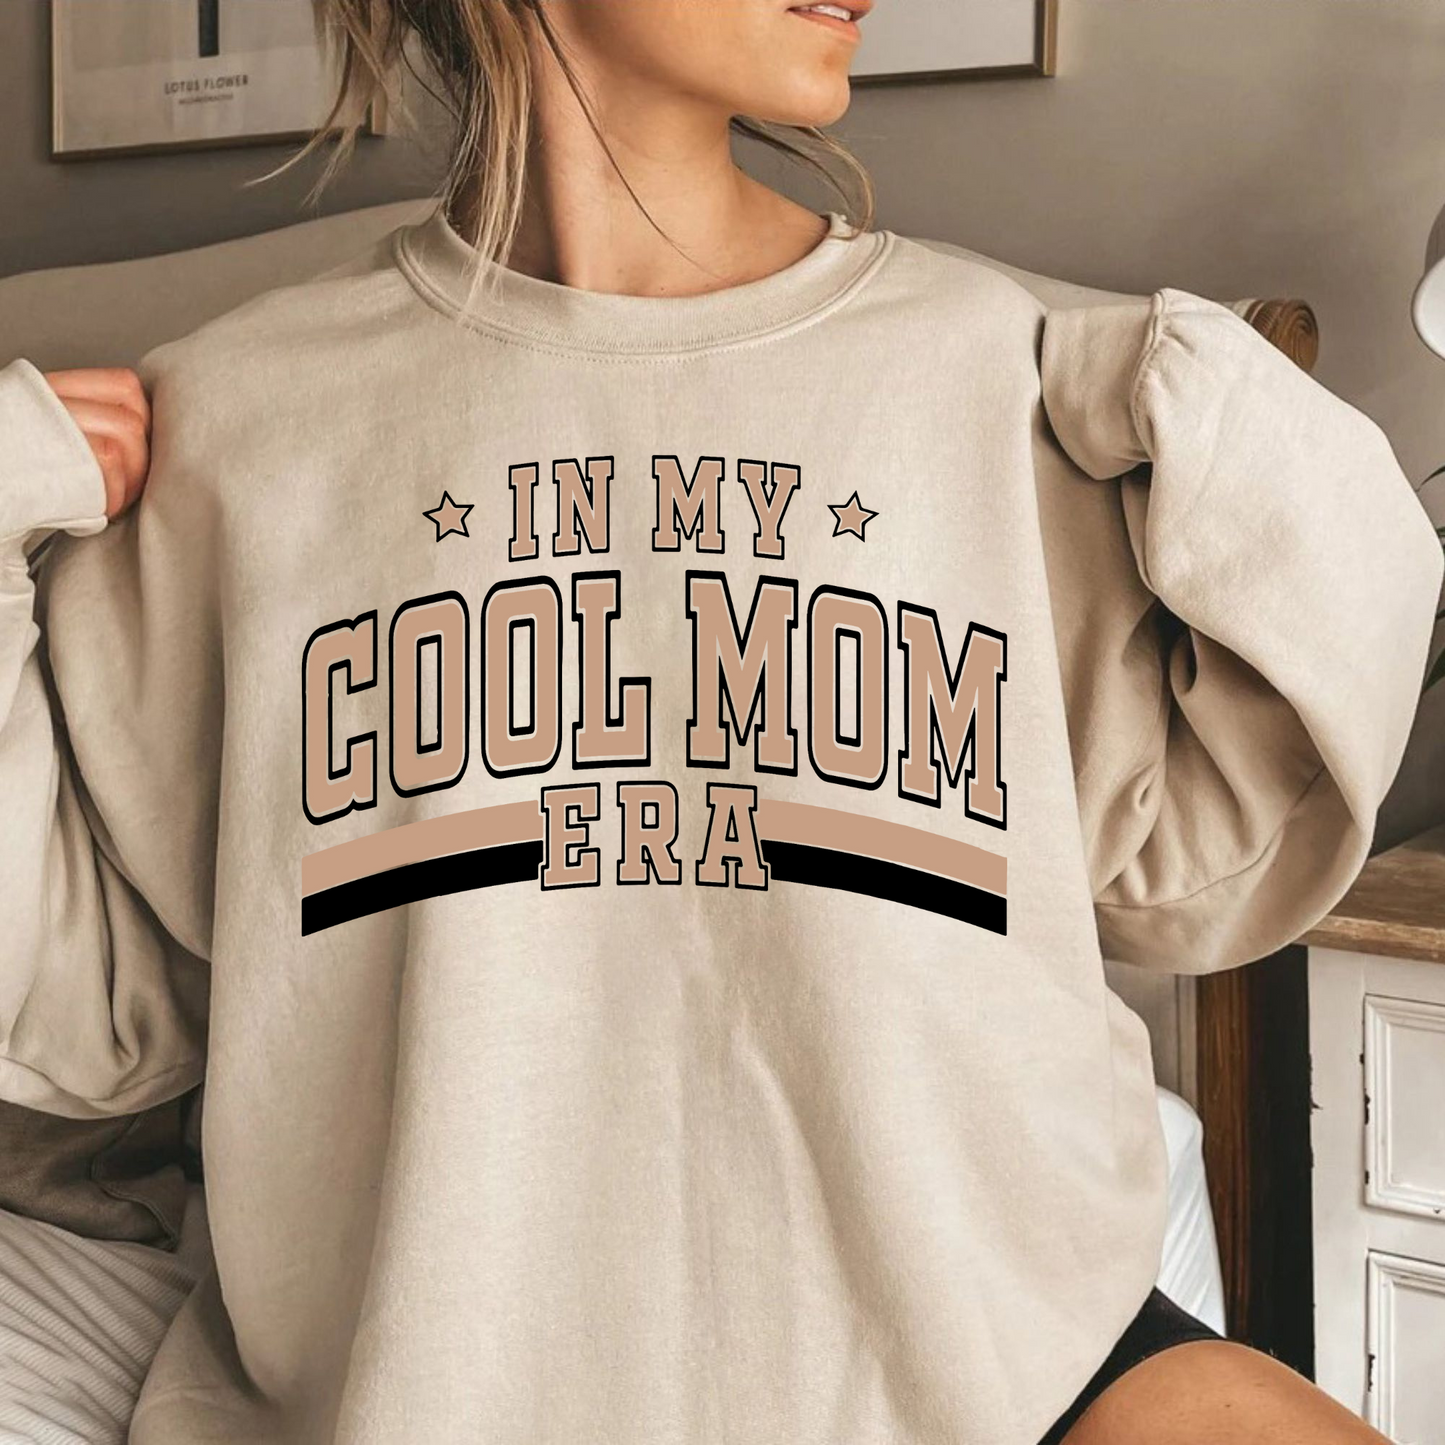 "Cool Mom Zeitalter" T-Shirt – Das Must-Have für Mütter